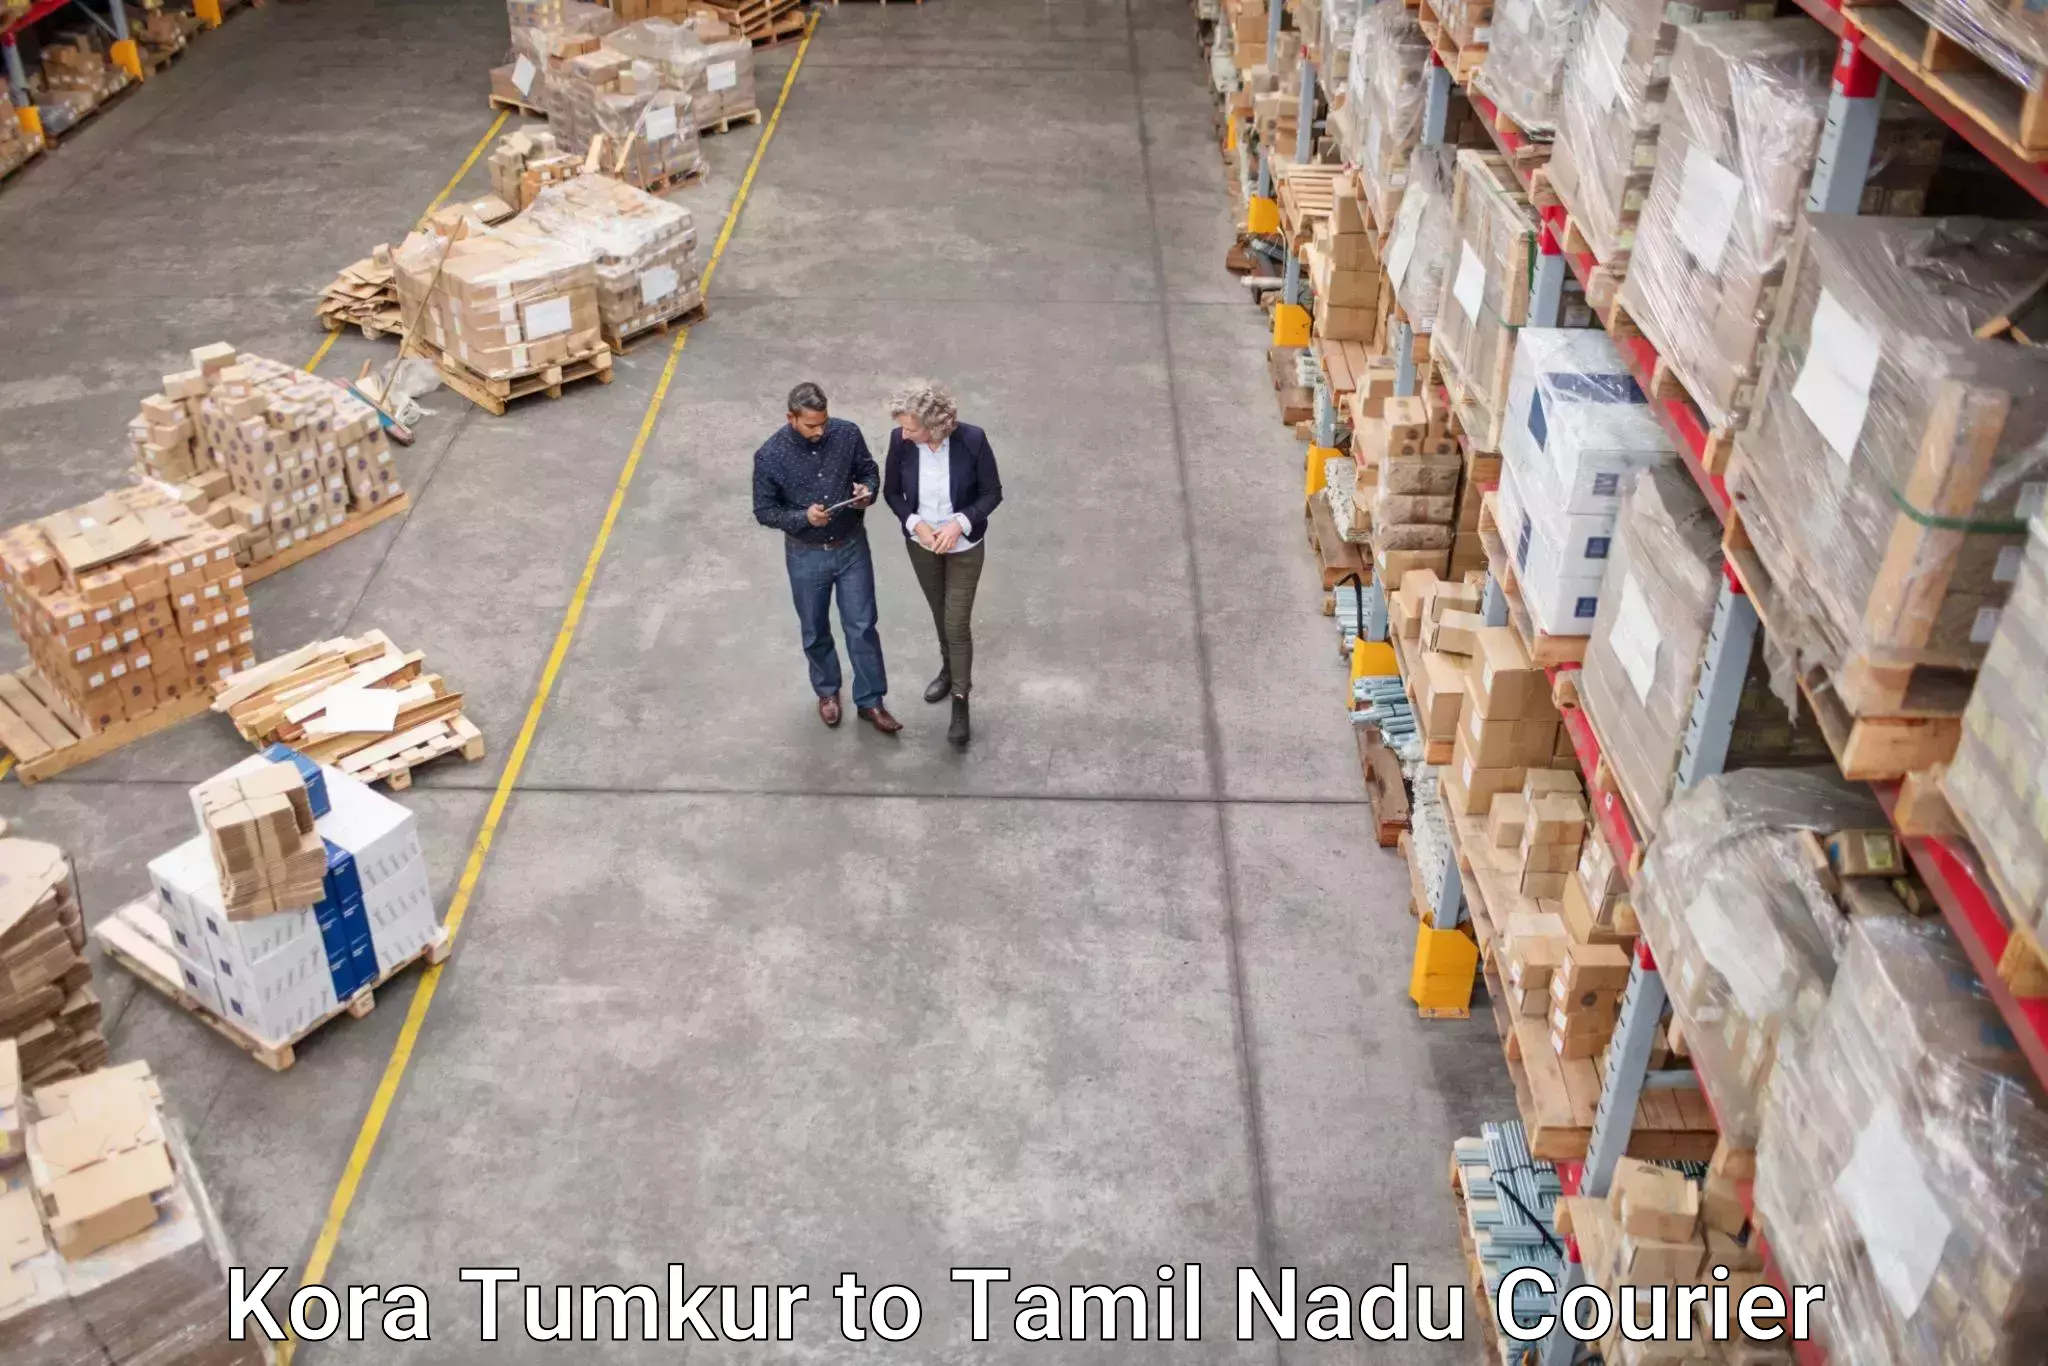 Reliable courier services Kora Tumkur to Krishnagiri